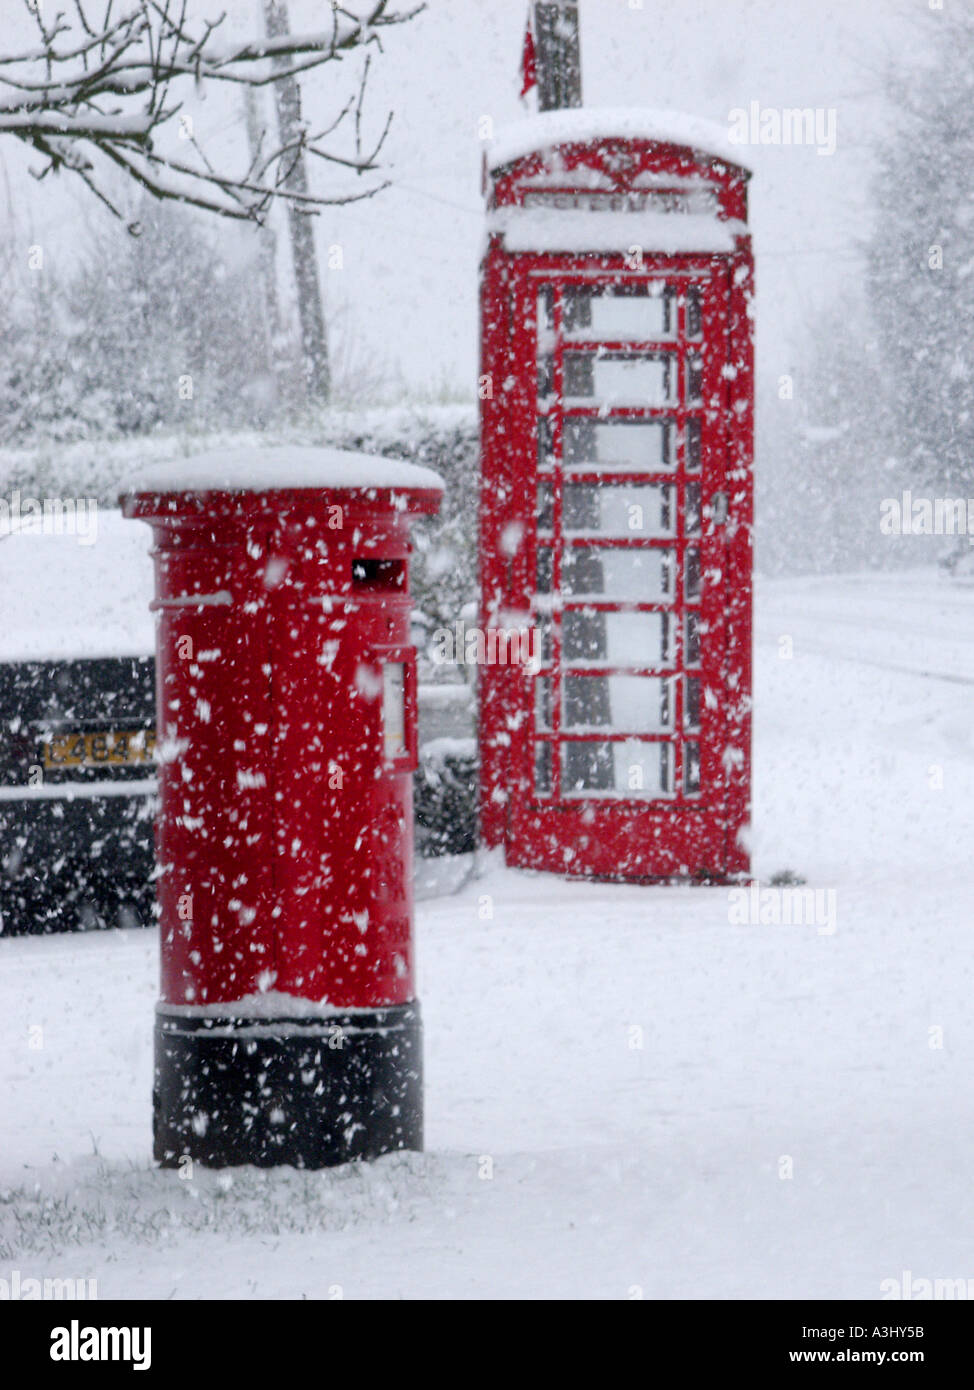 Village rural scène de rue hiver & flocons tomber autour de British Telecom téléphone rouge fort et royal mail pilier lettre fort Essex England UK Banque D'Images